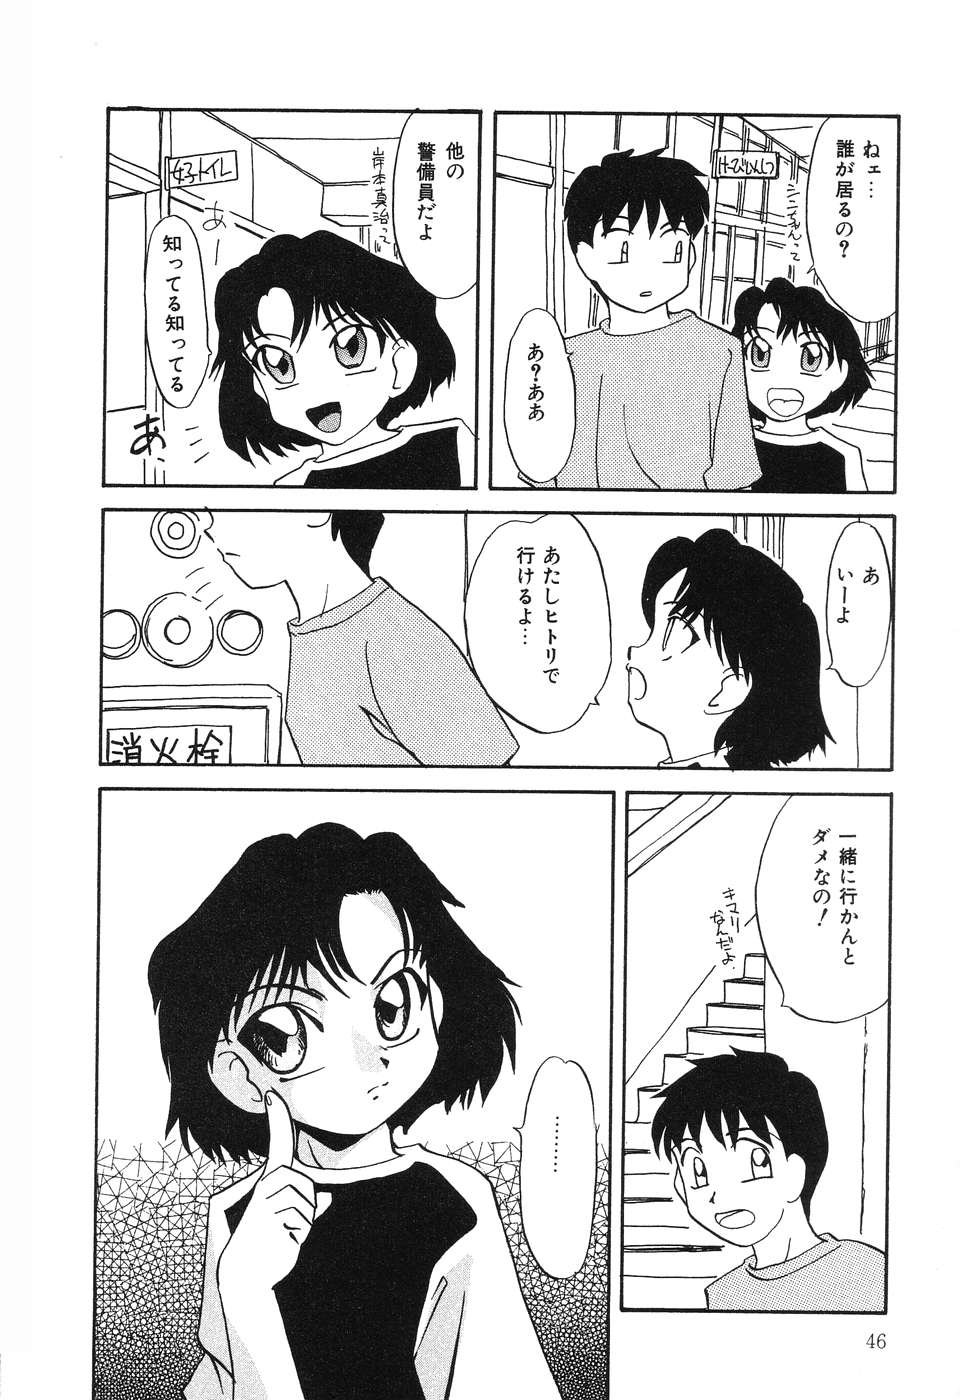 [Hisatomi Shintarou] Nounai Mayaku page 47 full